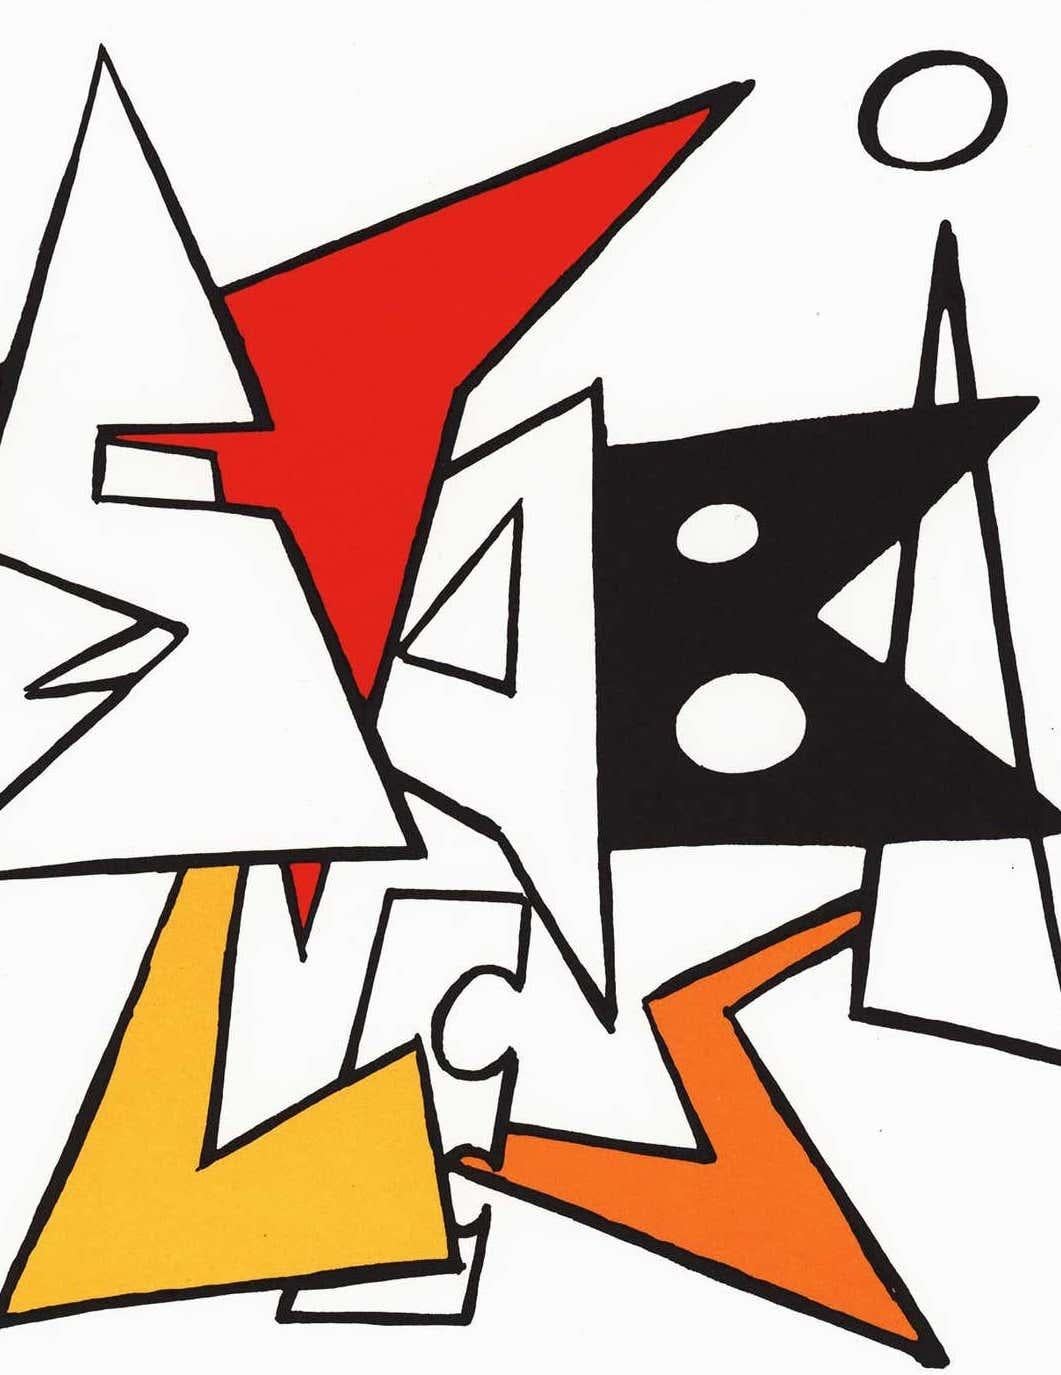 Alexander Calder Couverture lithographique c. 1963 de Derrière le miroir :

Page de couverture lithographique en couleurs ; 11 x 15 pouces.
Très bon état général vintage.
Non signé d'une édition d'inconnus avec des couleurs vives et nettes.
Publié